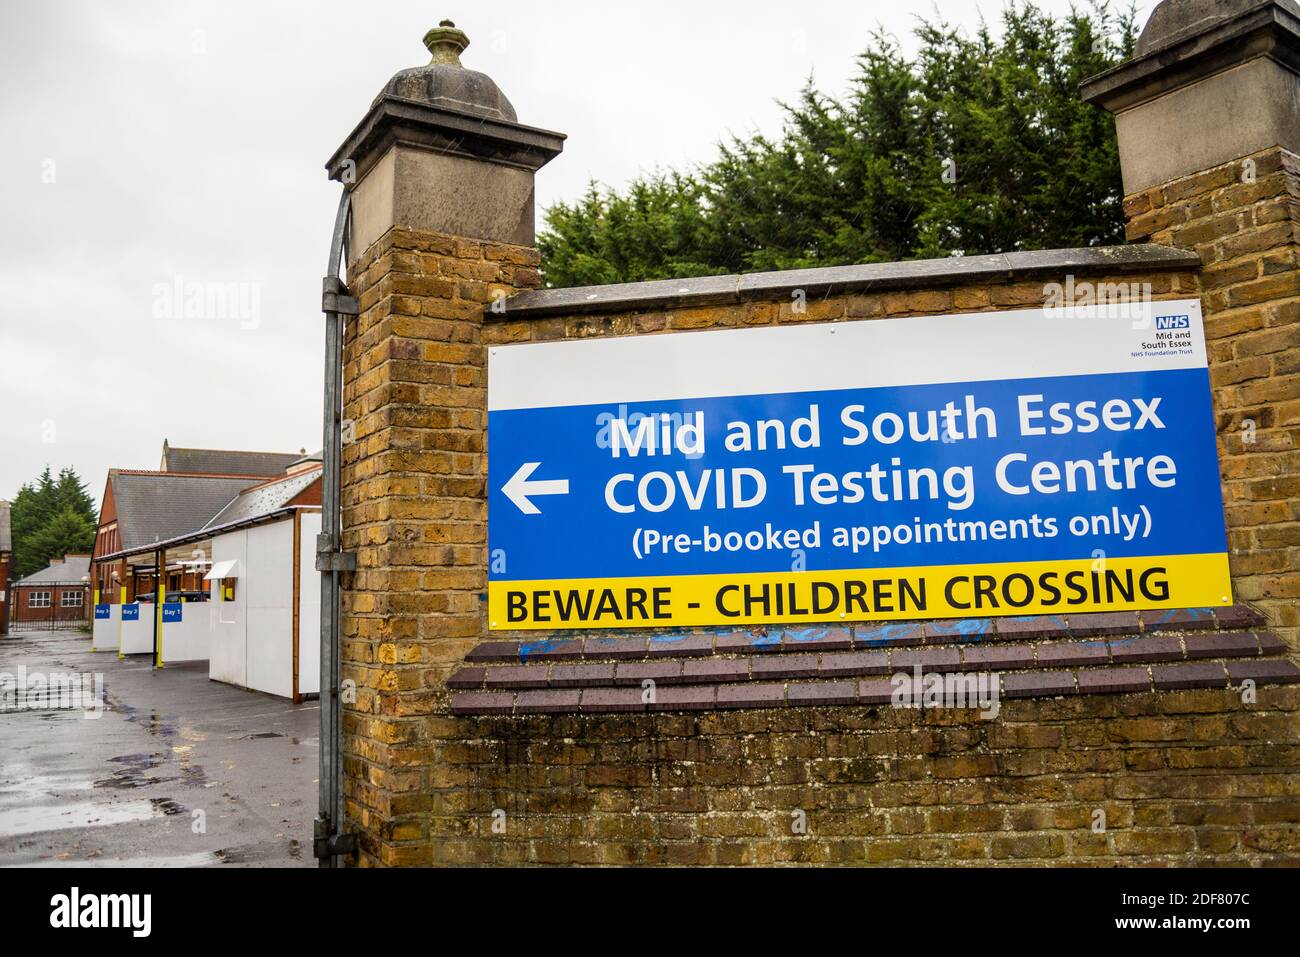 Centro di test Covid 19. Centro di test NHS Covid dell'Essex medio e sud a Southend sul mare, Essex, Regno Unito. Solo appuntamenti prenotati in anticipo, cartello. Comunità Foto Stock